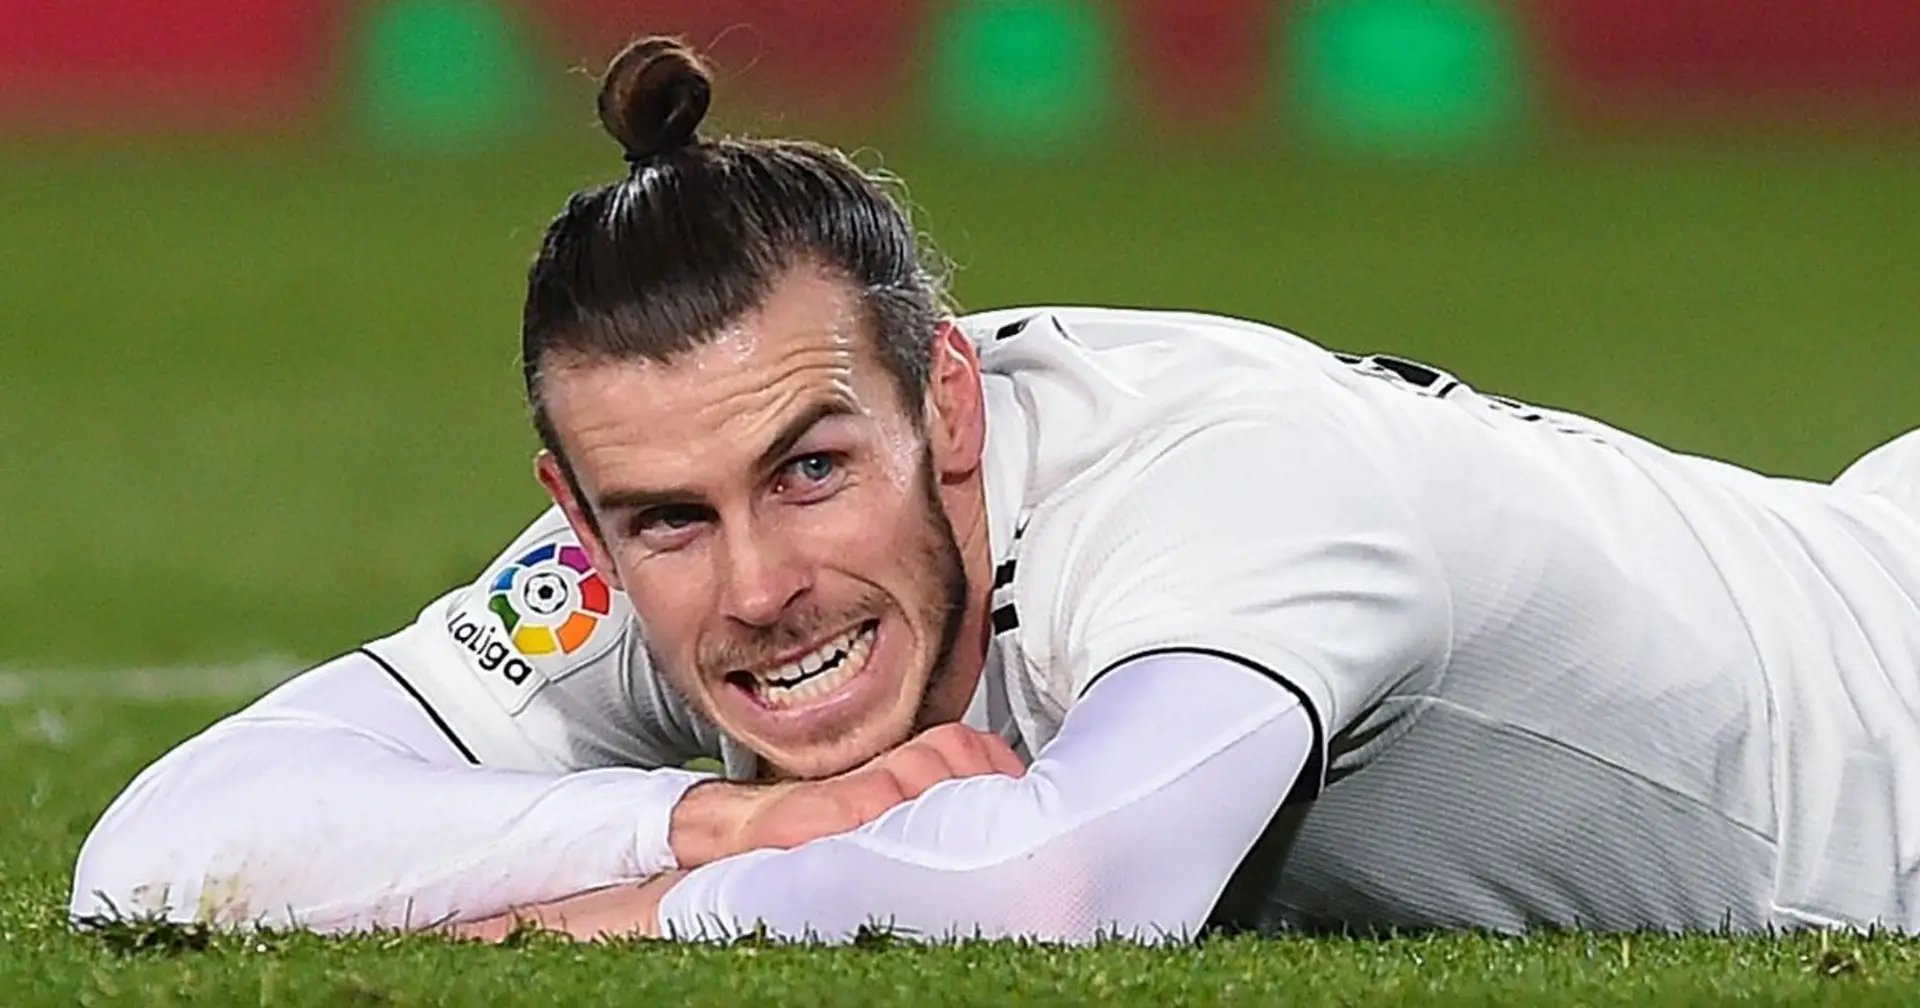 El Madrid espera la mejor versión de Bale cuando se reanude la competición